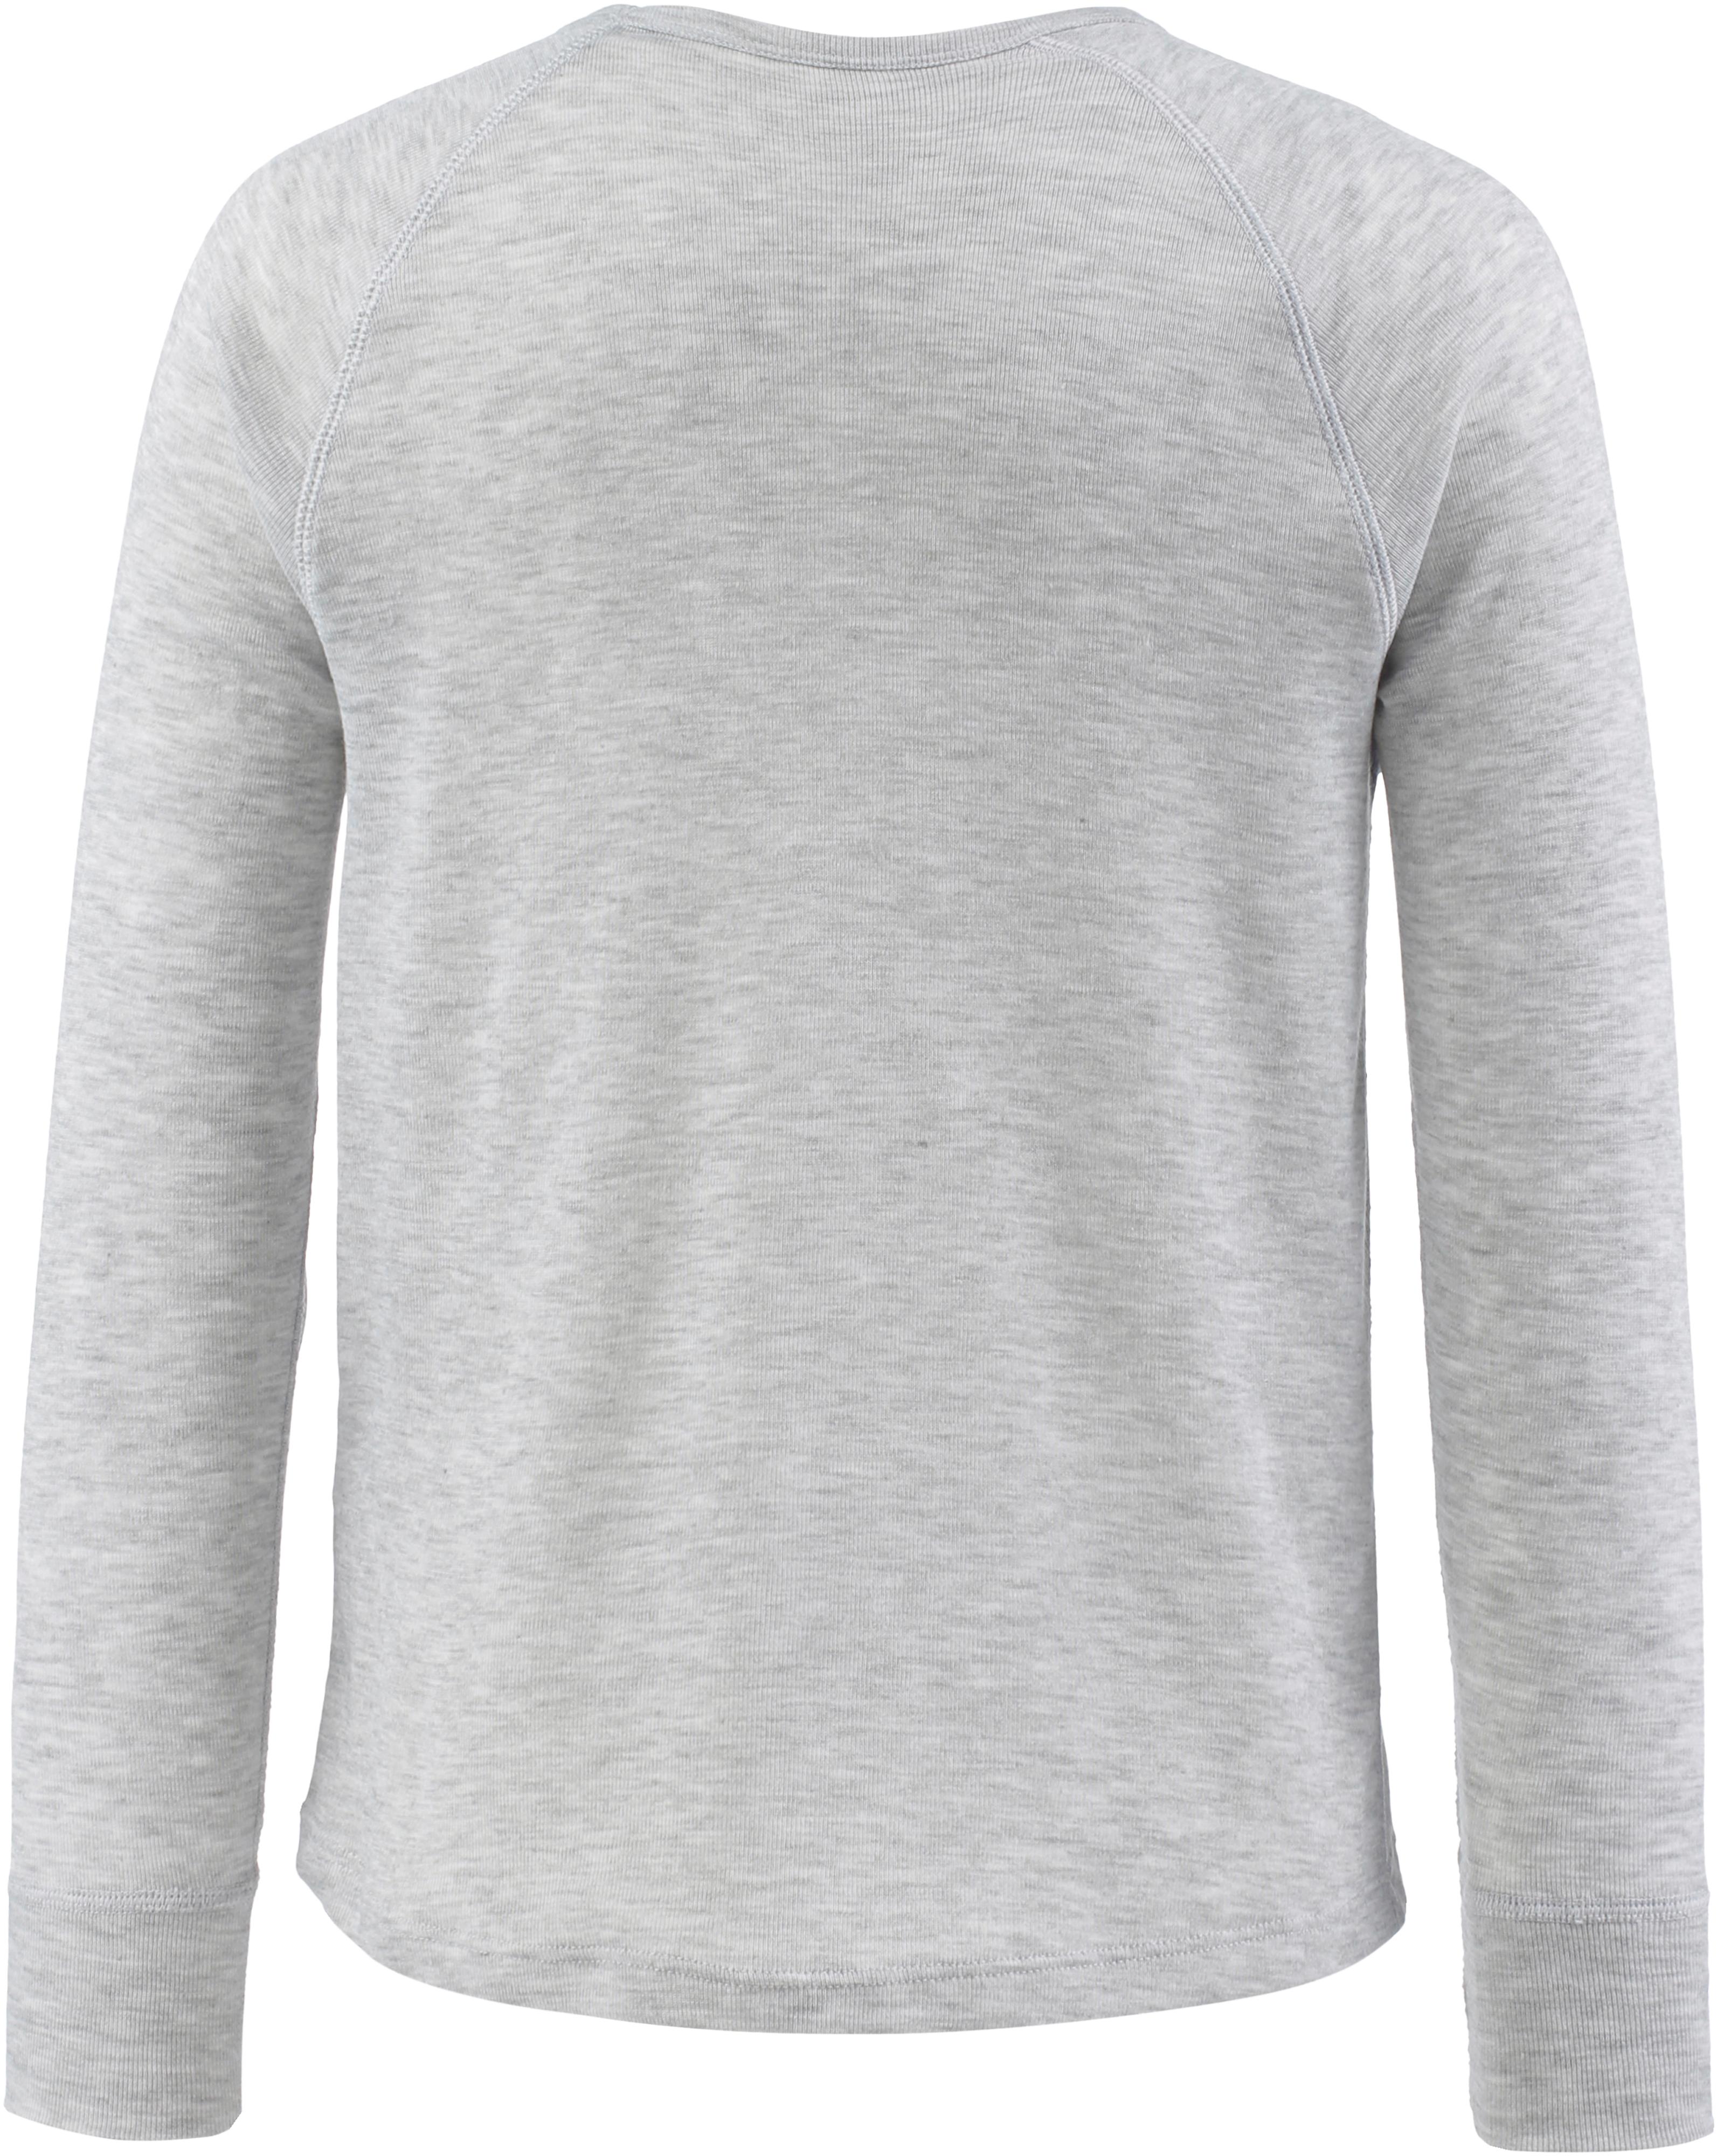 CMP Unterhemd Jungen grigio melange im Shop kaufen von SportScheck Online